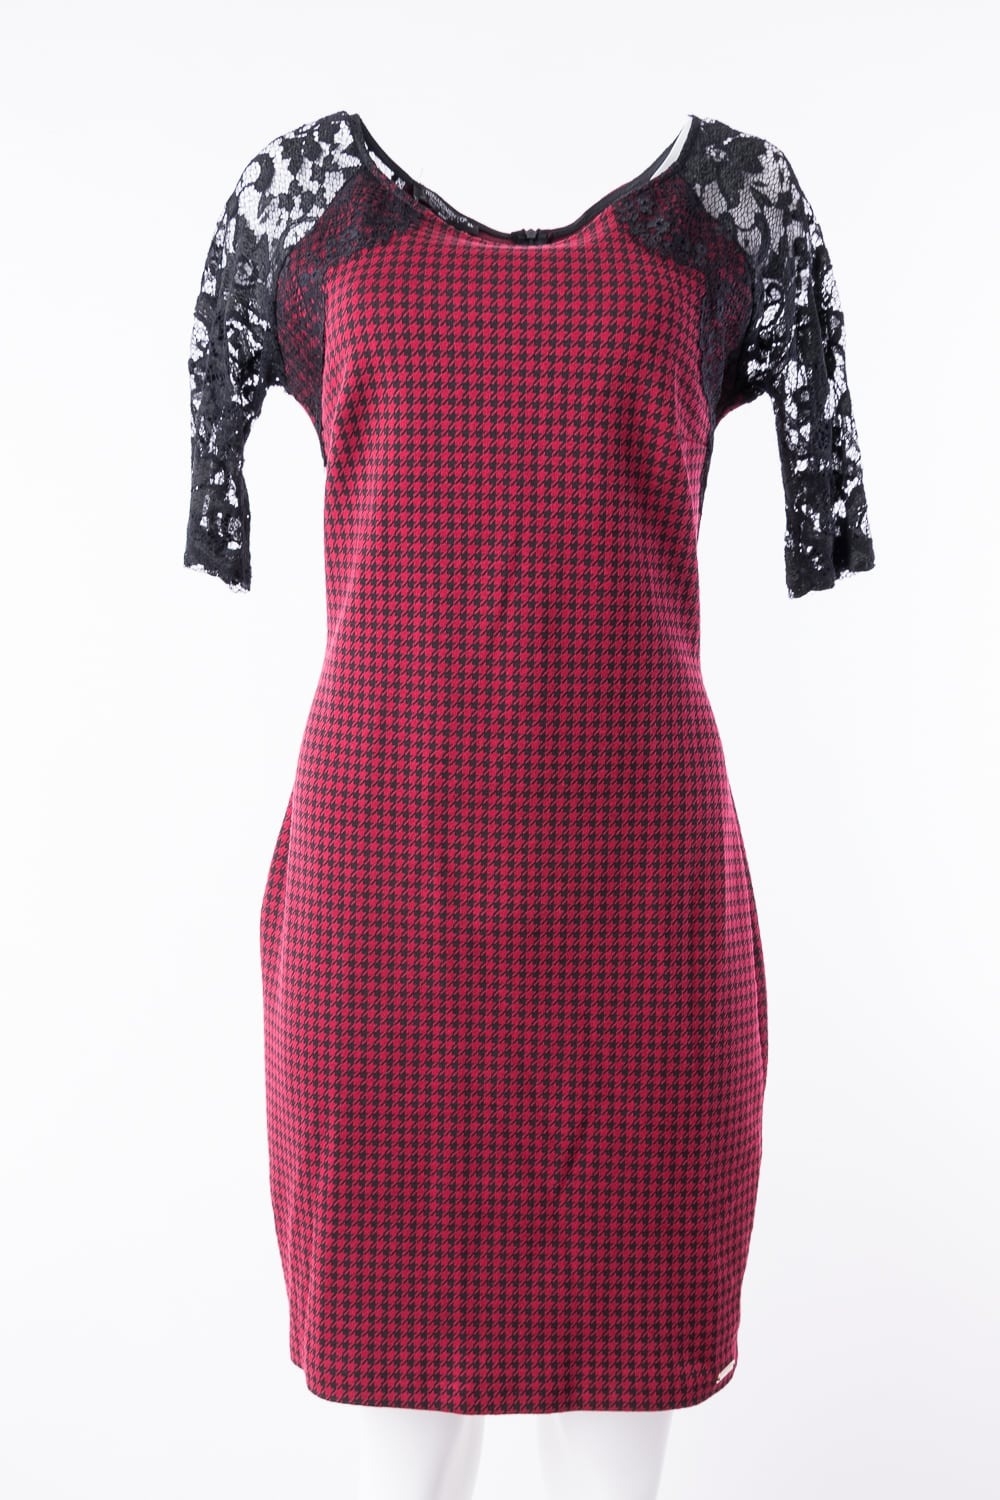 15 Fantastisch Kleid Schwarz Rot Spezialgebiet20 Genial Kleid Schwarz Rot Design